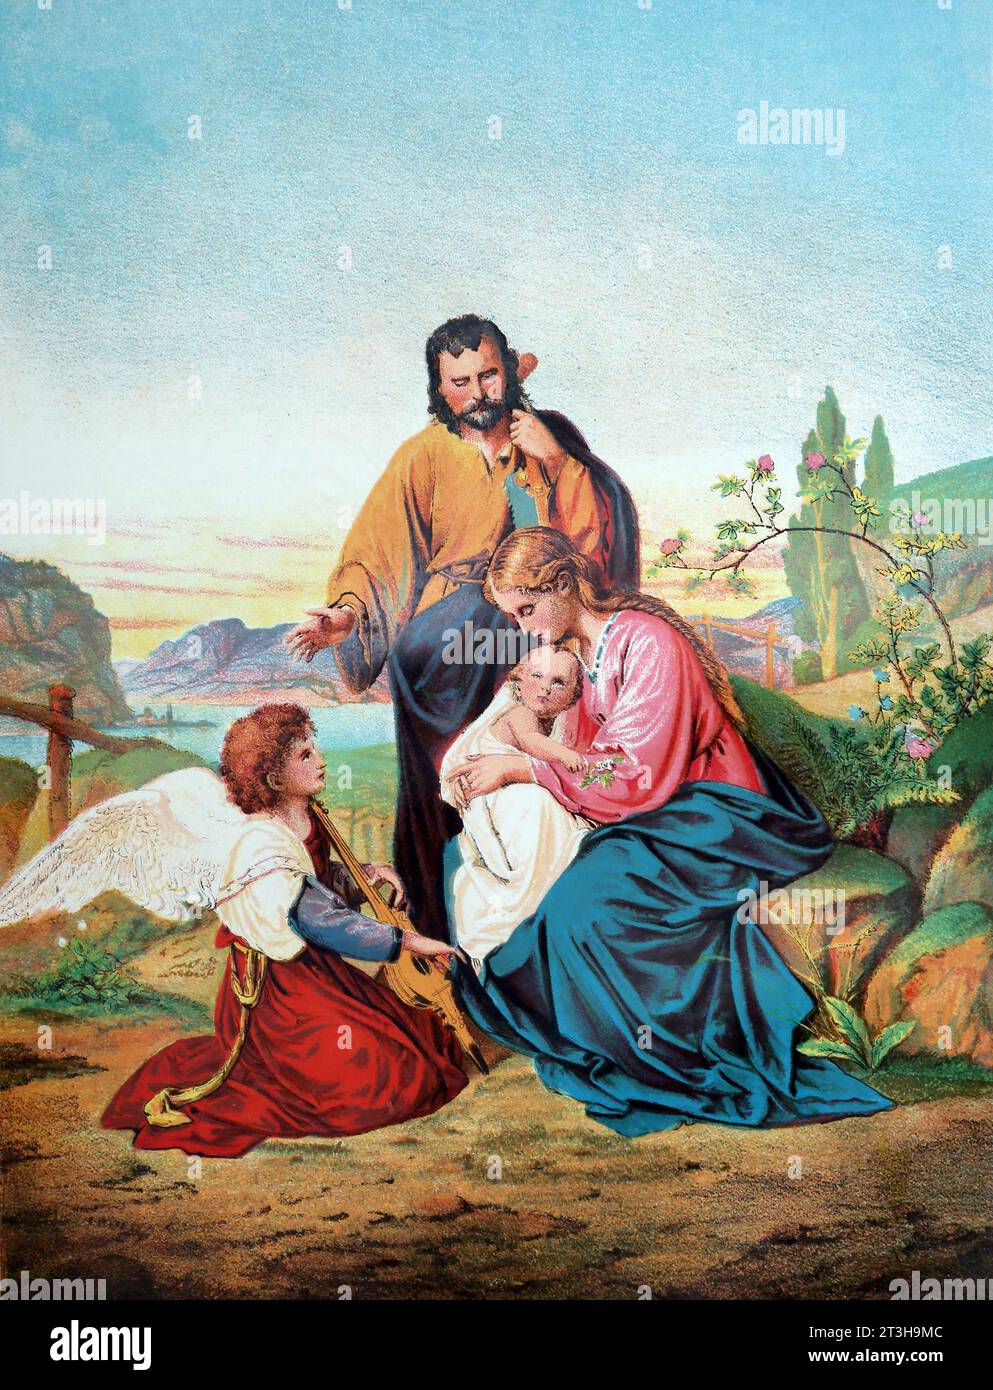 Illustration de la Sainte famille avec un Ange jouant de la musique Évangiles du Nouveau Testament de la Sainte Bible du 19e siècle Banque D'Images